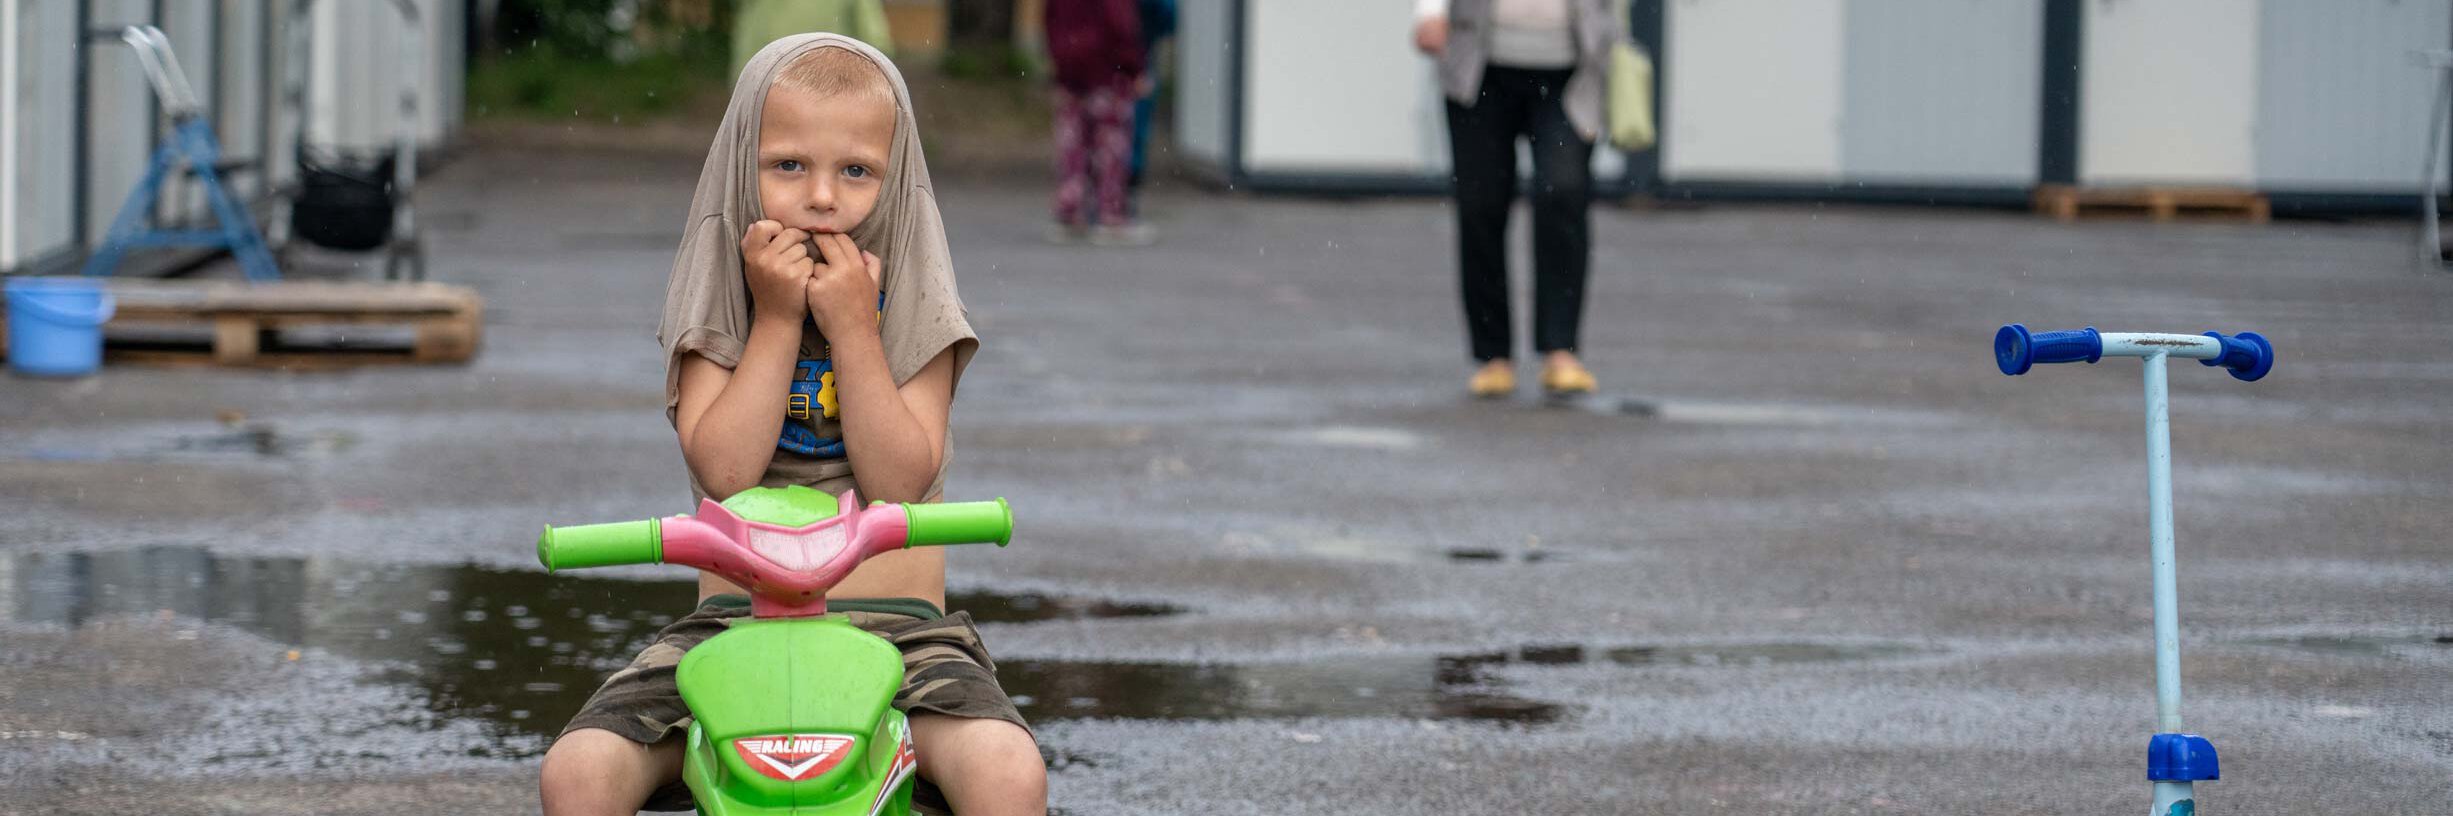 Junge auf Fahrrad in der Ukraine